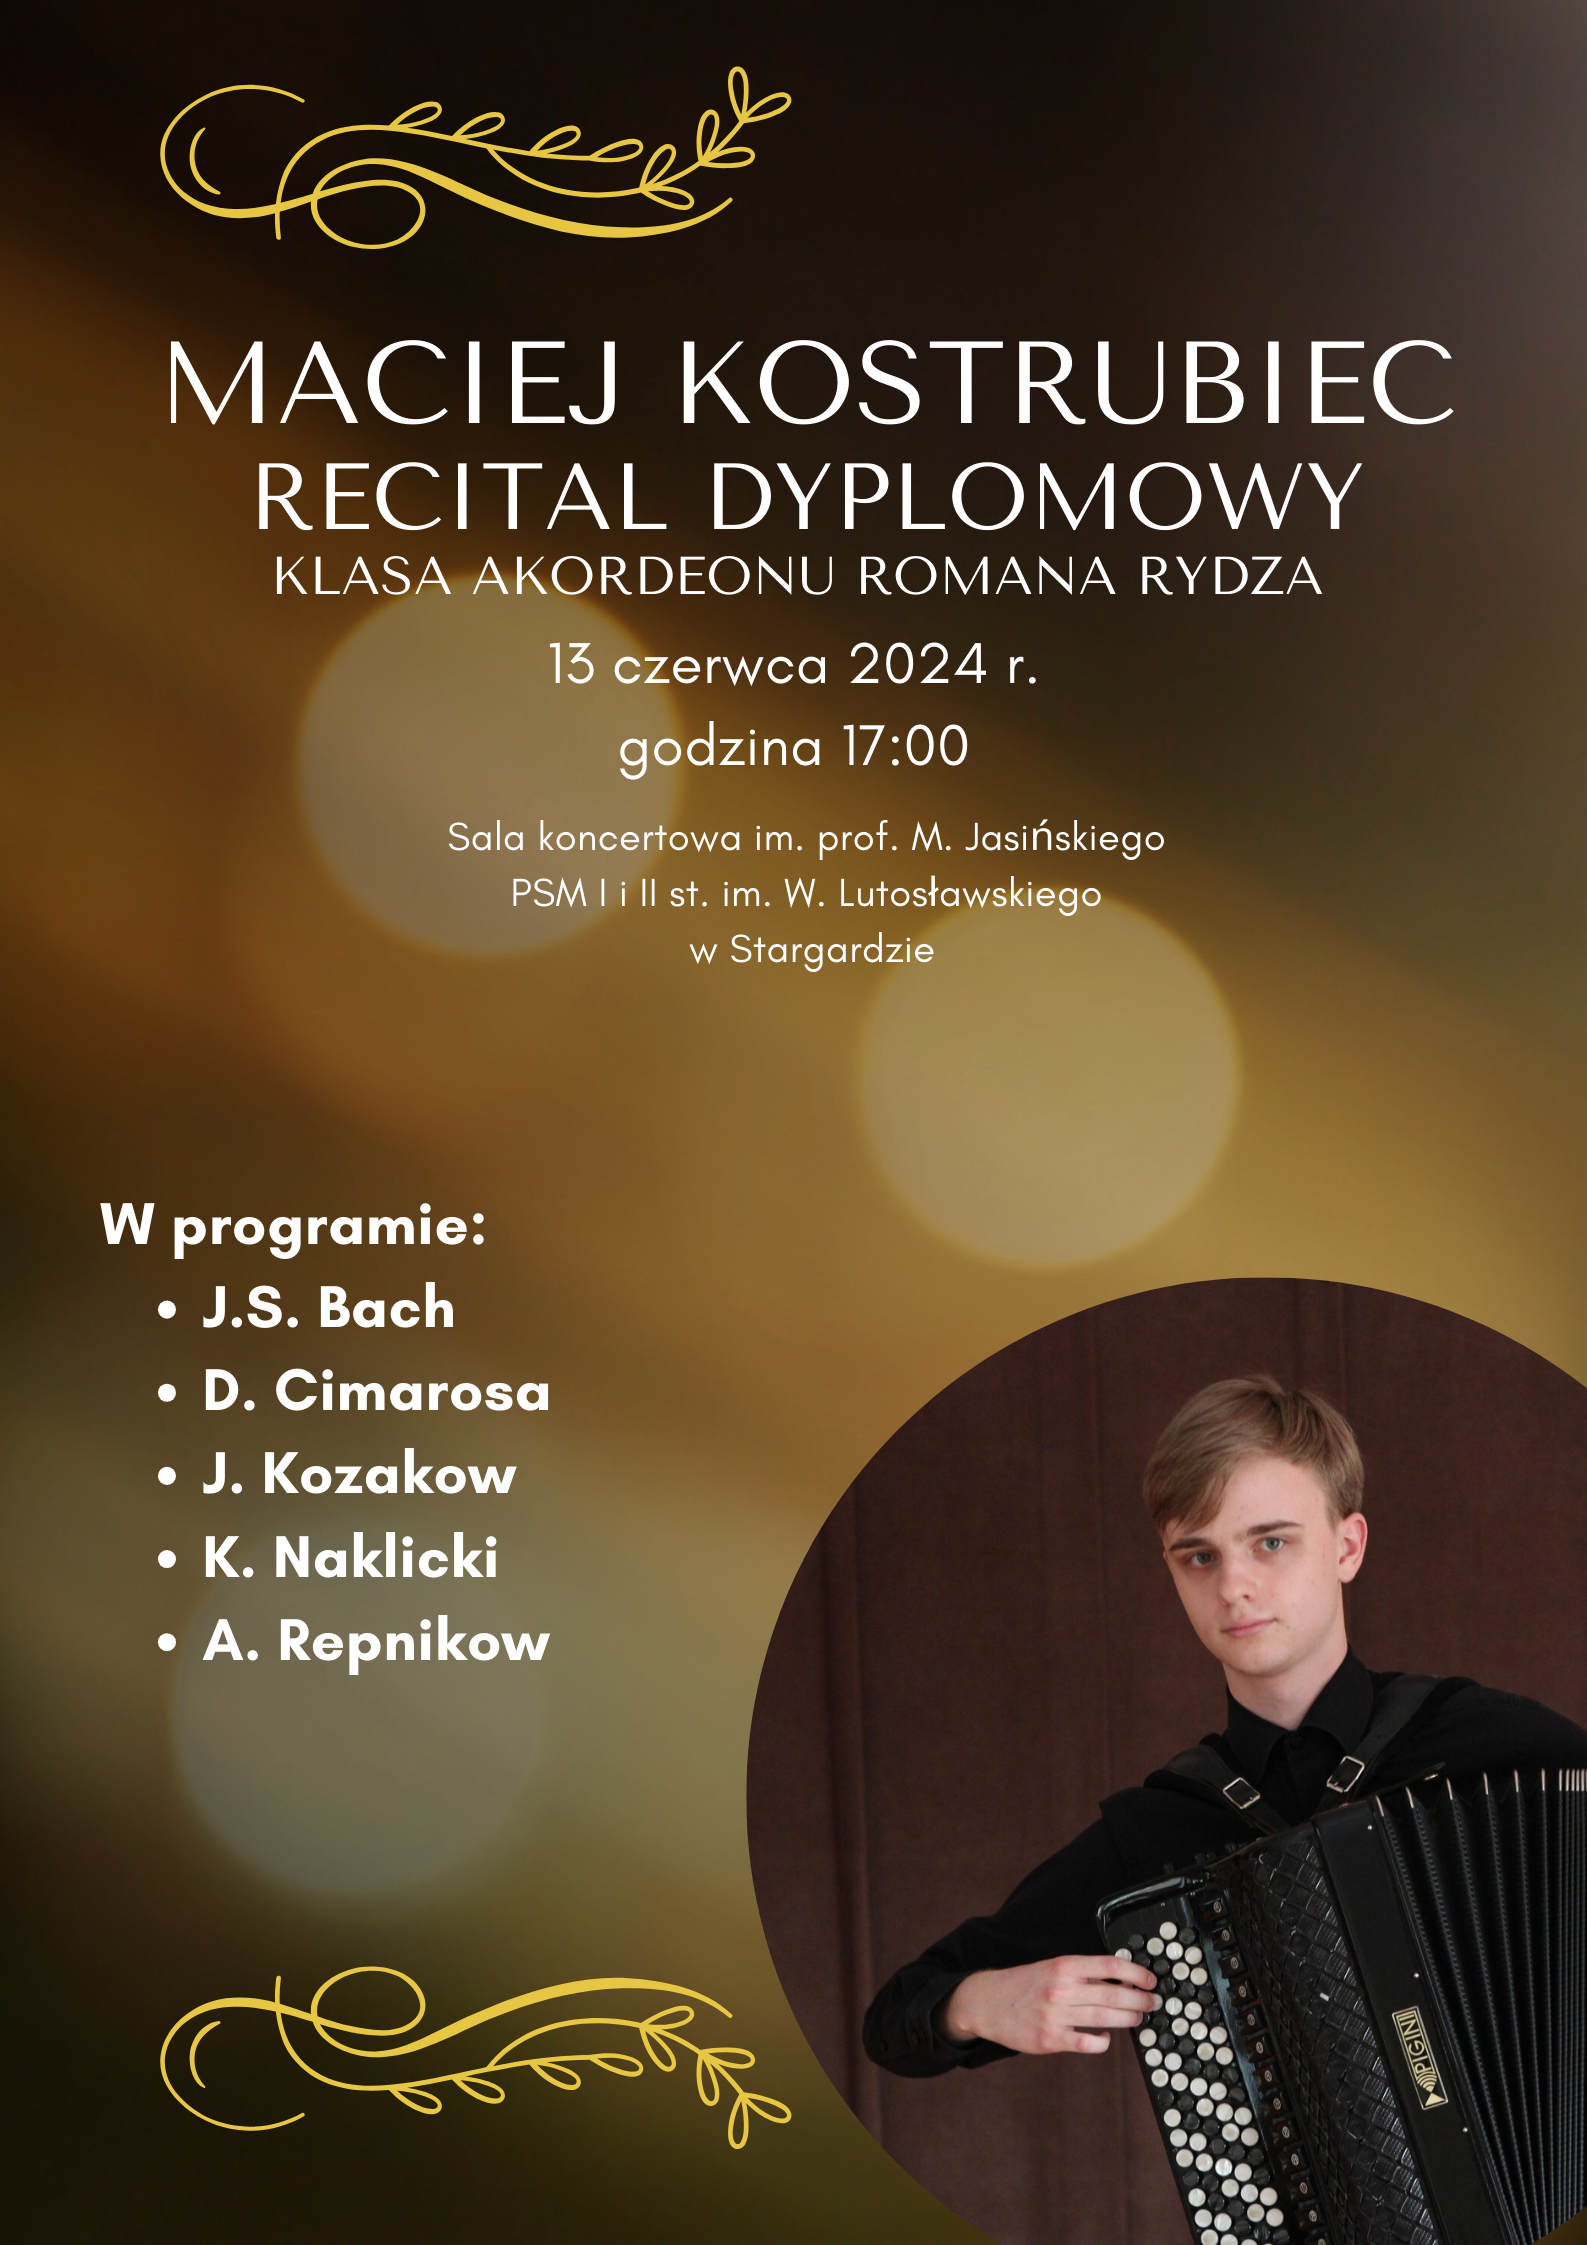 Plakat informujący o recitalu dyplomowym Macieja Kostrubca w dniu 13 czerwca 2024 o godzinie 17.00. Tło plakatu jest złocisto-brązowe z odblaskami światła. W prawym dolnym rogu znajduje się zdjęcie ucznia grającego na akordeonie guzikowym. Maciej ubrany jest w czarną koszulę, patrzy przed siebie.